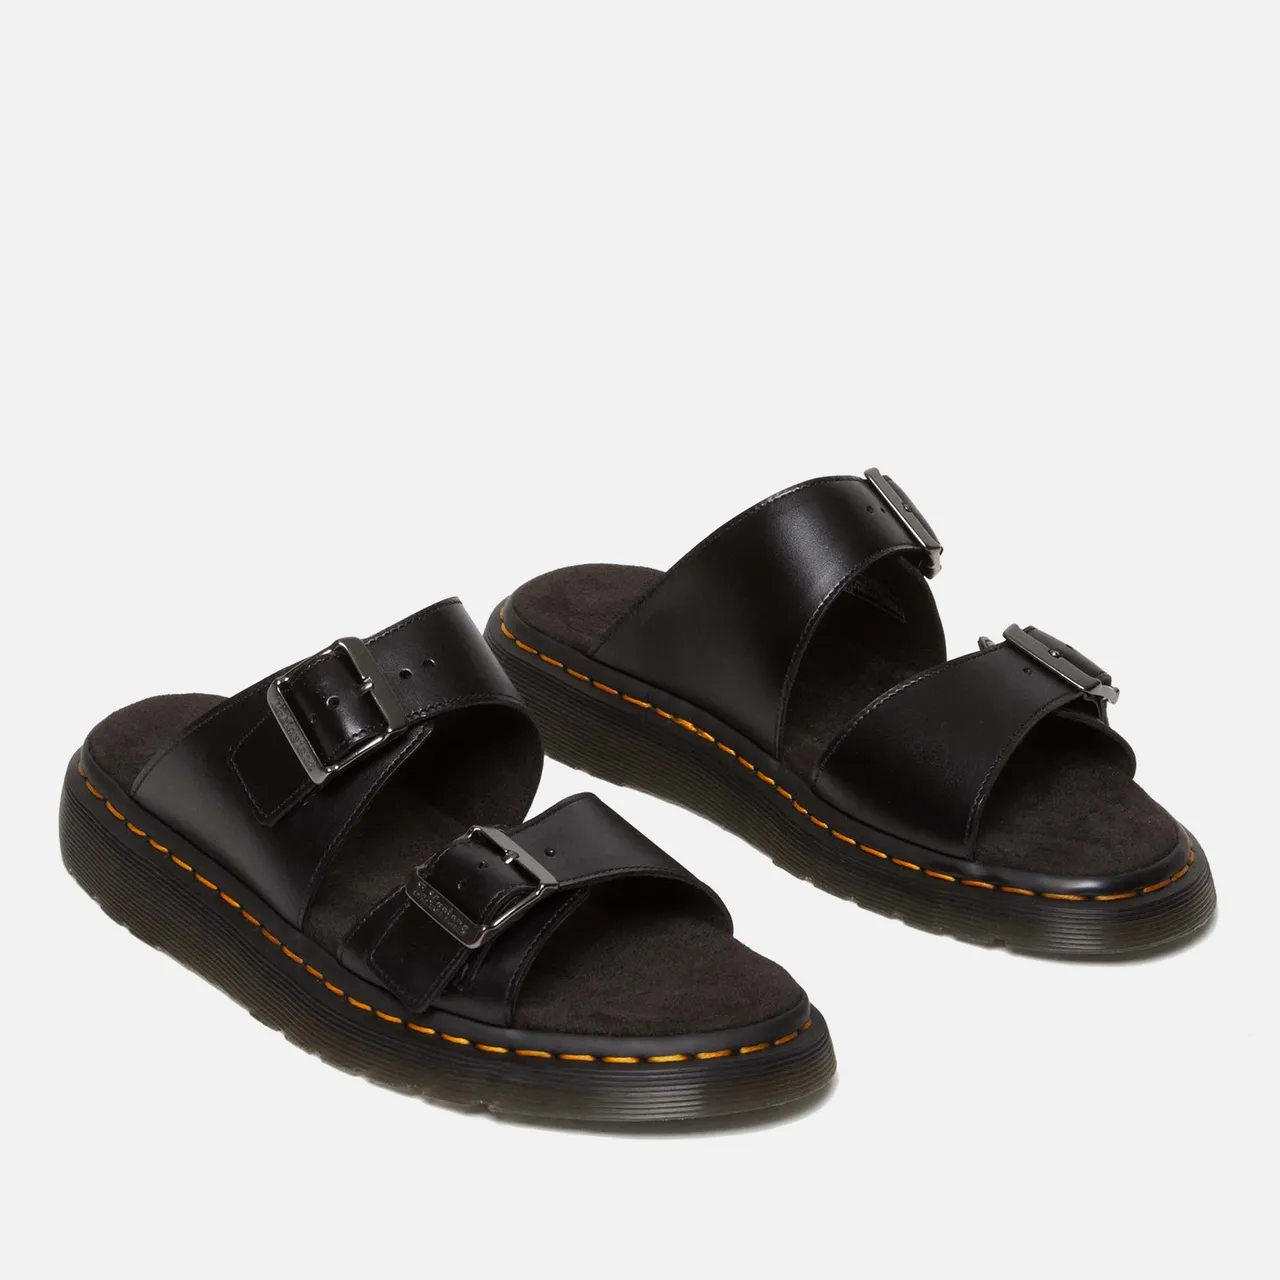 Dr. Martens Men's Josef Double Strap Leather Sandals - UK